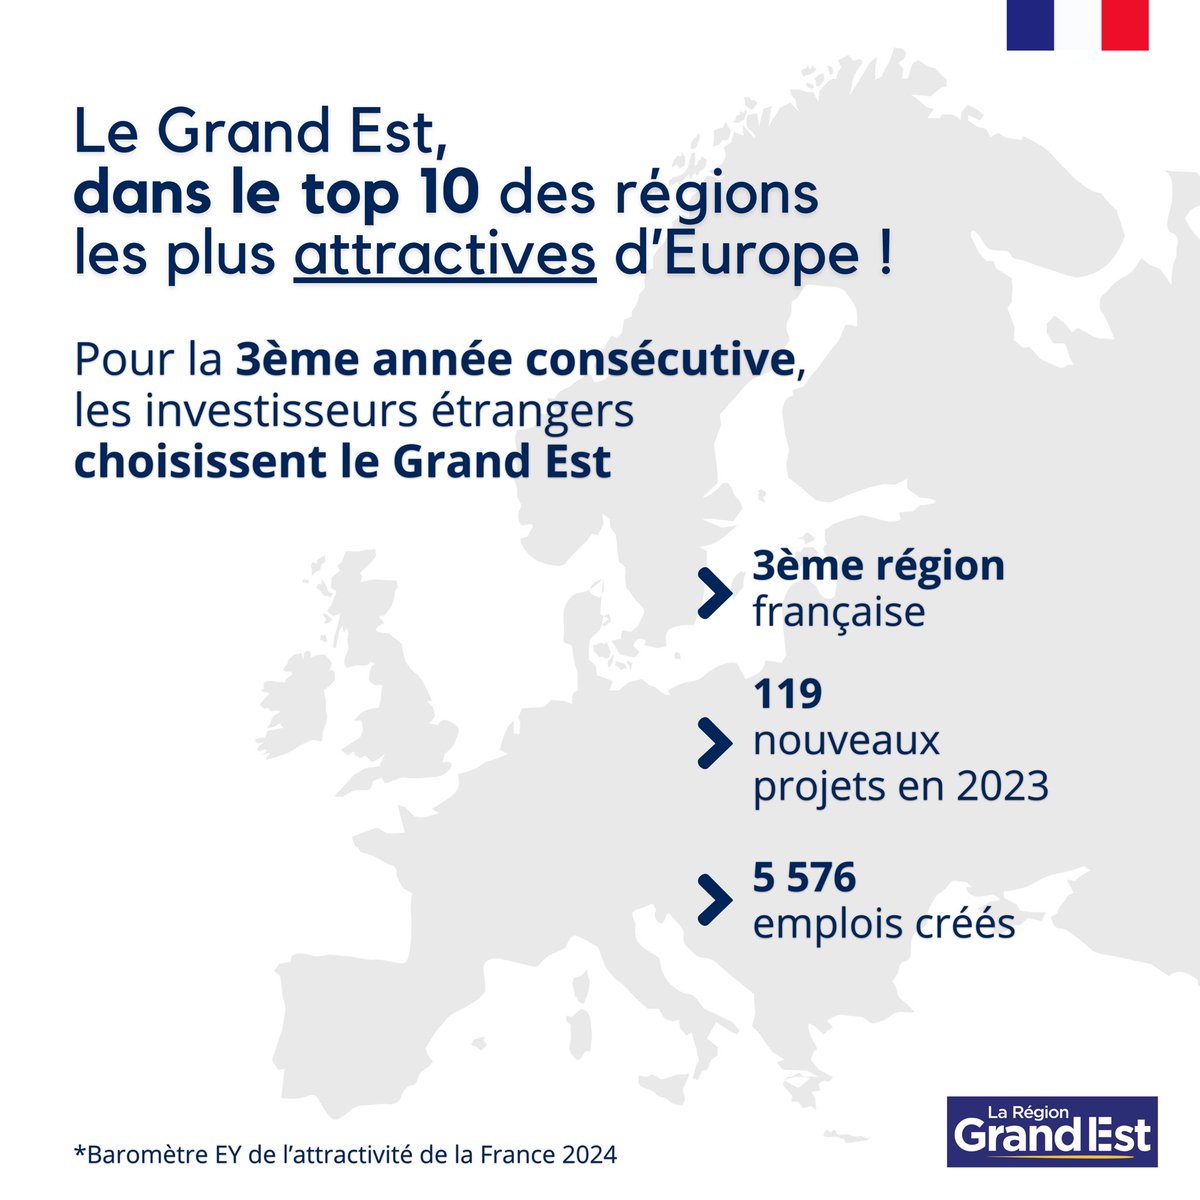 C'est confirmé ! 

La @regiongrandest est la 3ème région la plus attractive de France et intègre le top 10 européen en 2023.

Notre engagement en faveur de l'attractivité économique et la réindustrialisation de nos territoires porte ses fruits.